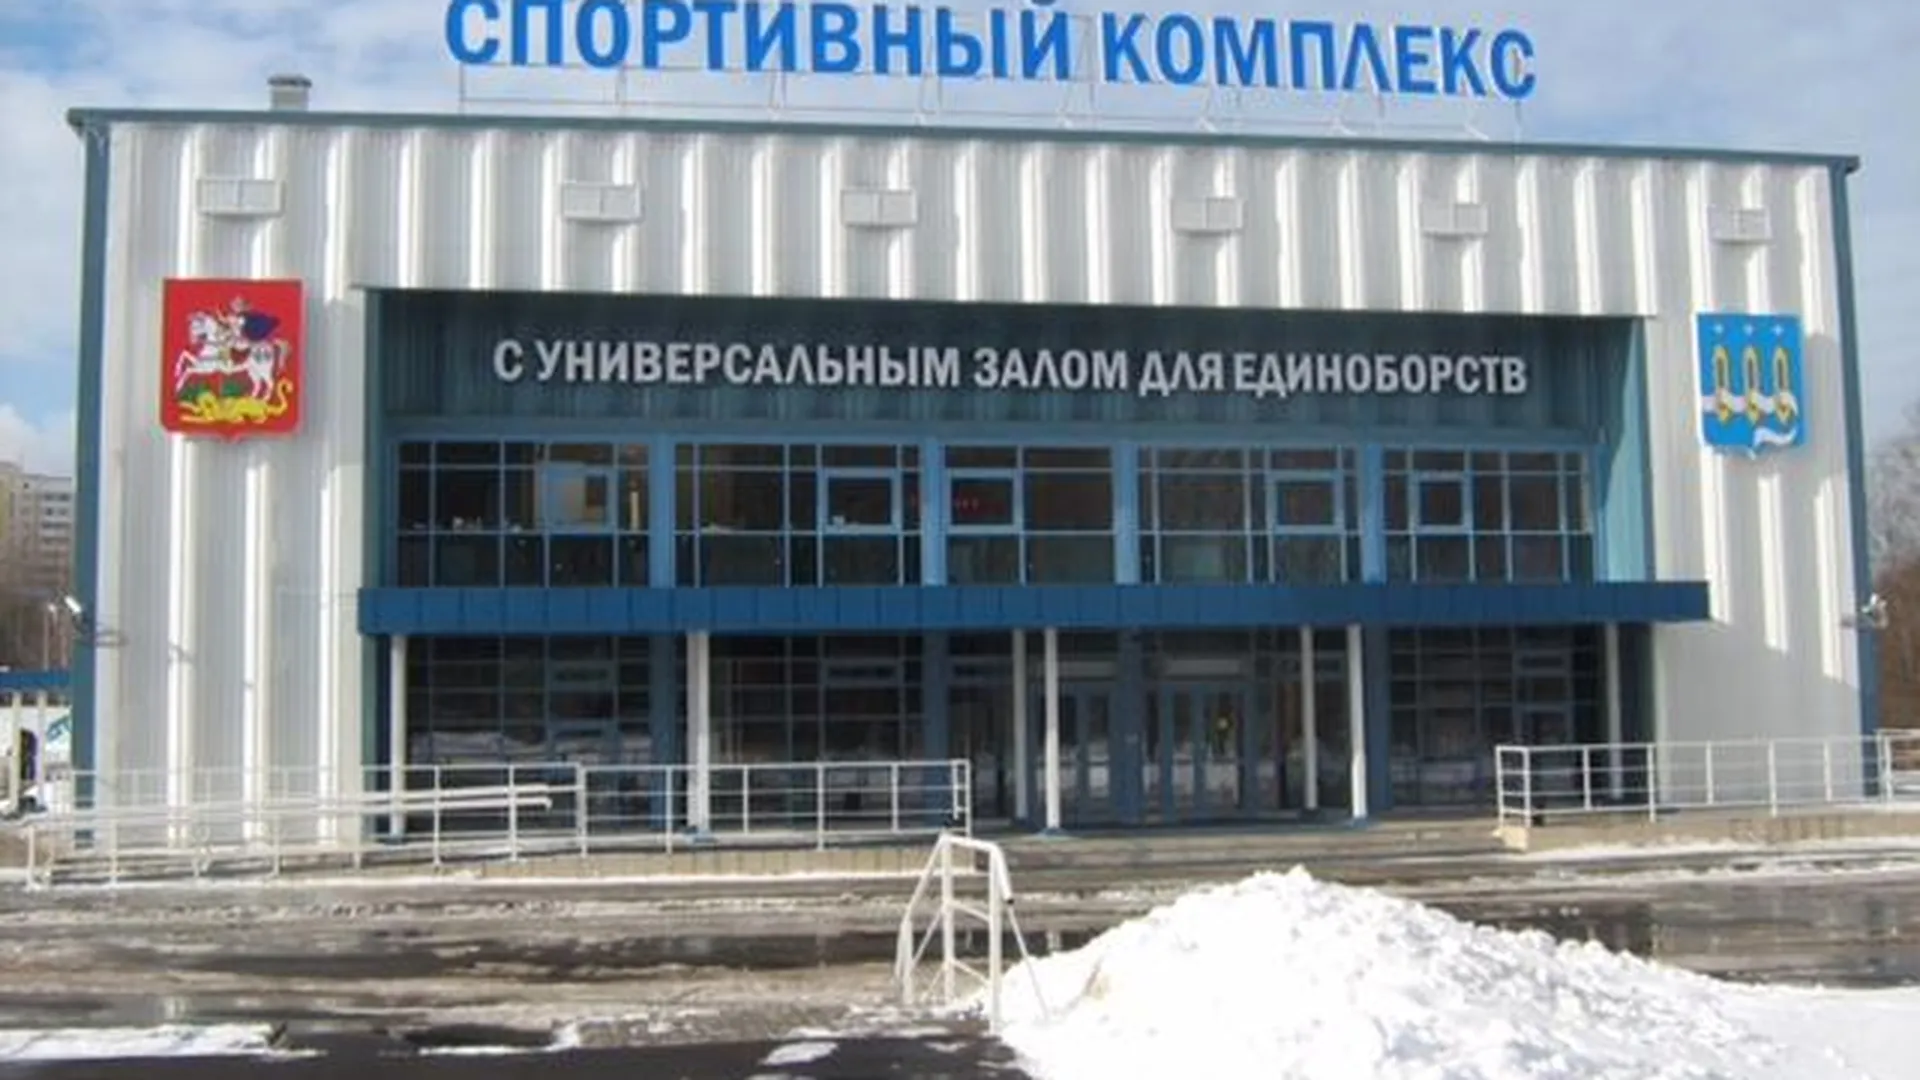 ФОК с универсальным спортзалом построили в Щелково